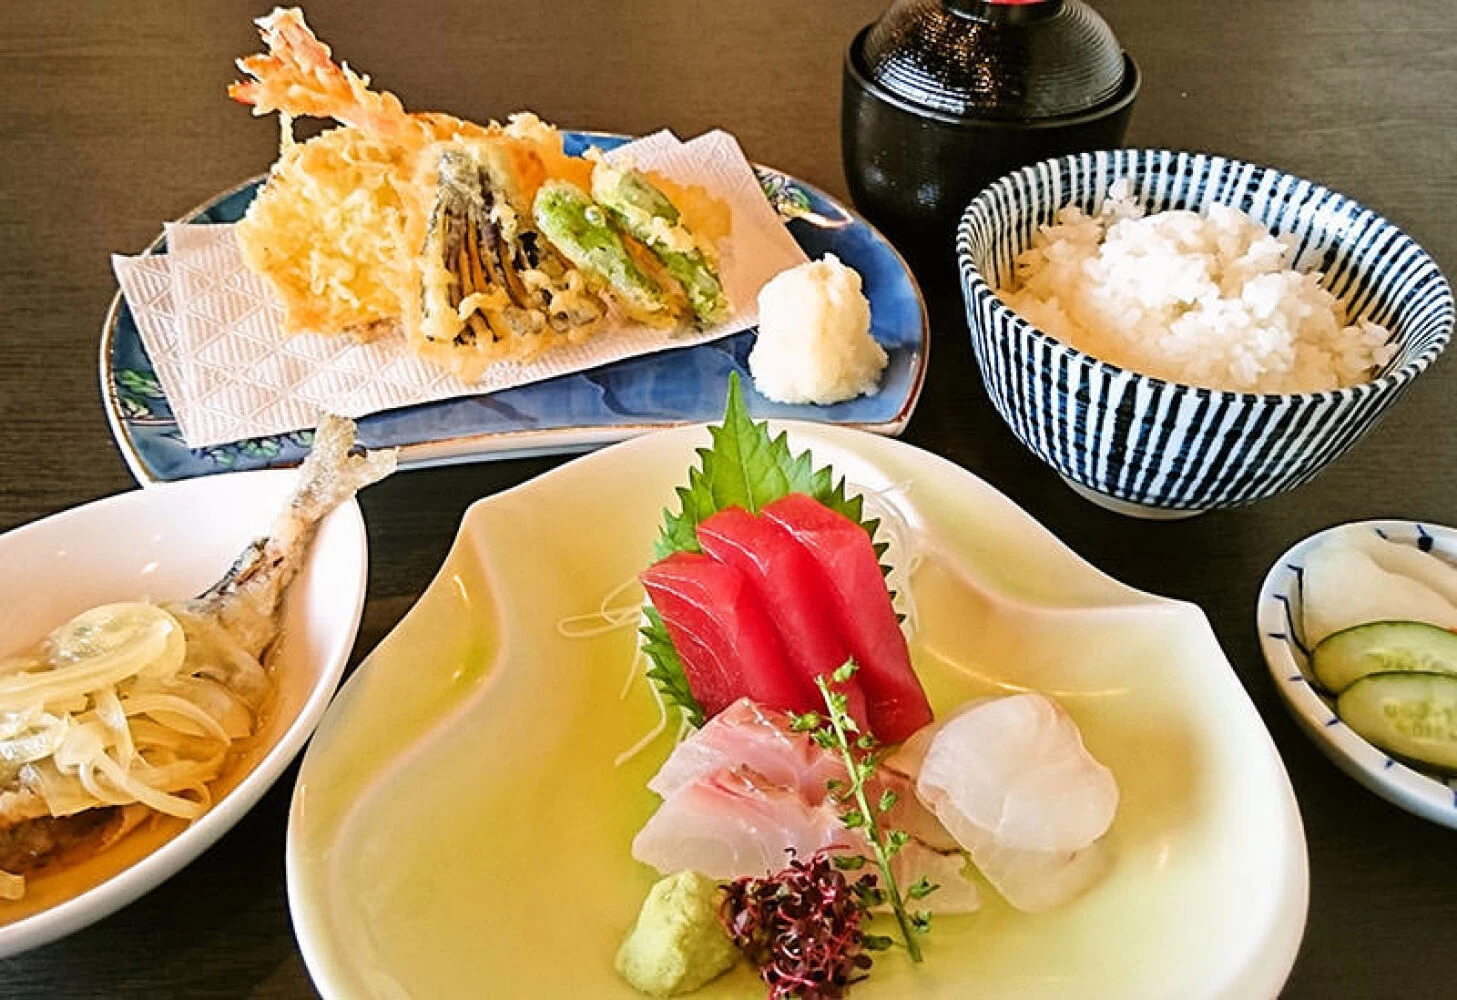 旬のお刺身とサックサクの揚げたて天ぷらがついた人気の定食「礁膳」